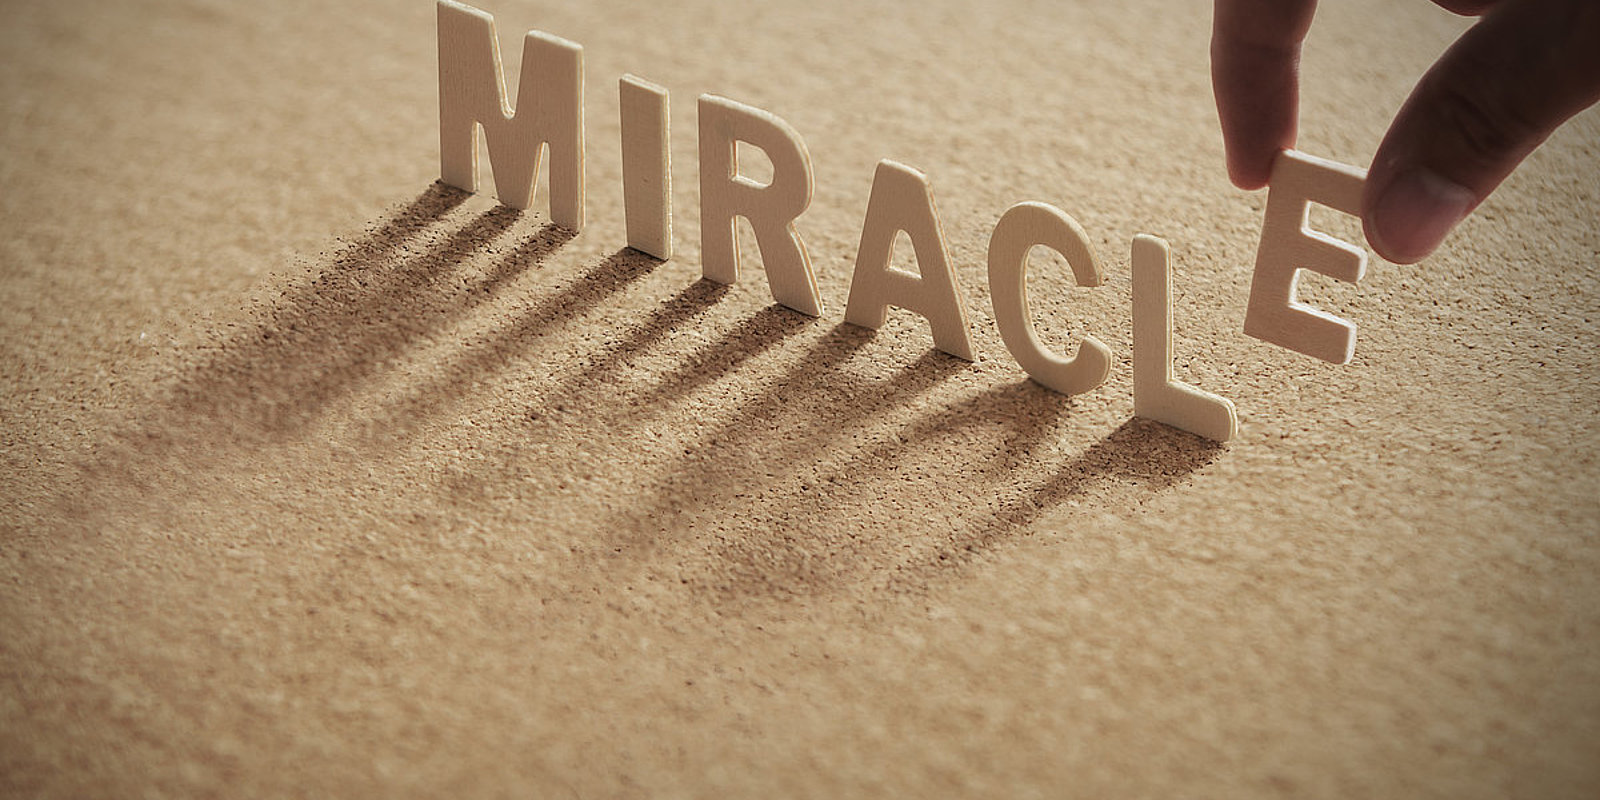 Débat en direct : « Faut-il croire aux miracles ? » avec Matthieu Lavagna